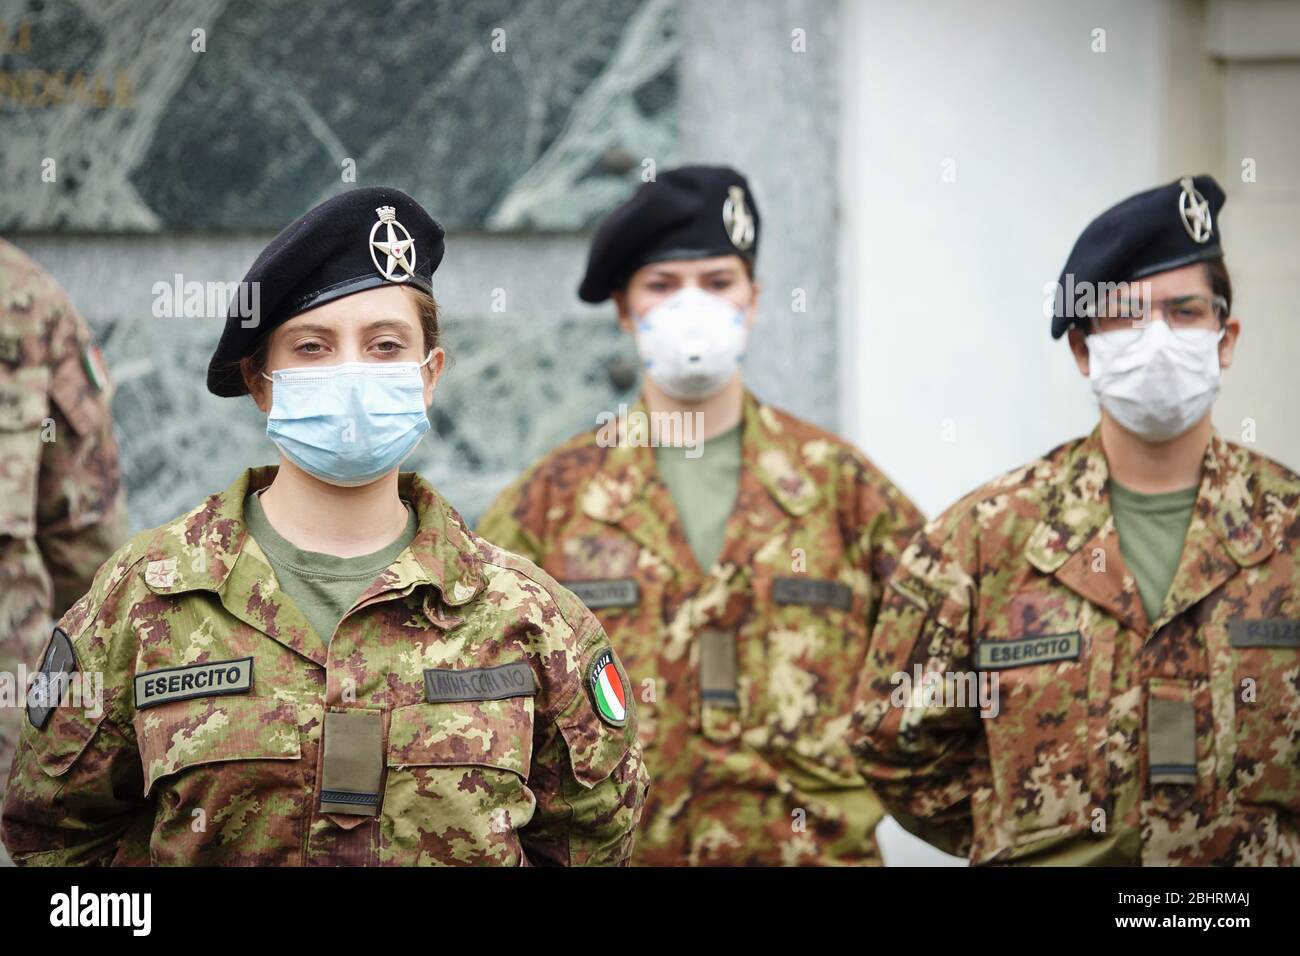 Nuevas enfermeras militares que se emplearán en residencias de ancianos para ayudar al sistema regional de salud a hacer frente a la emergencia del coronavirus. Turín, Italia - Abril 2020 Foto de stock